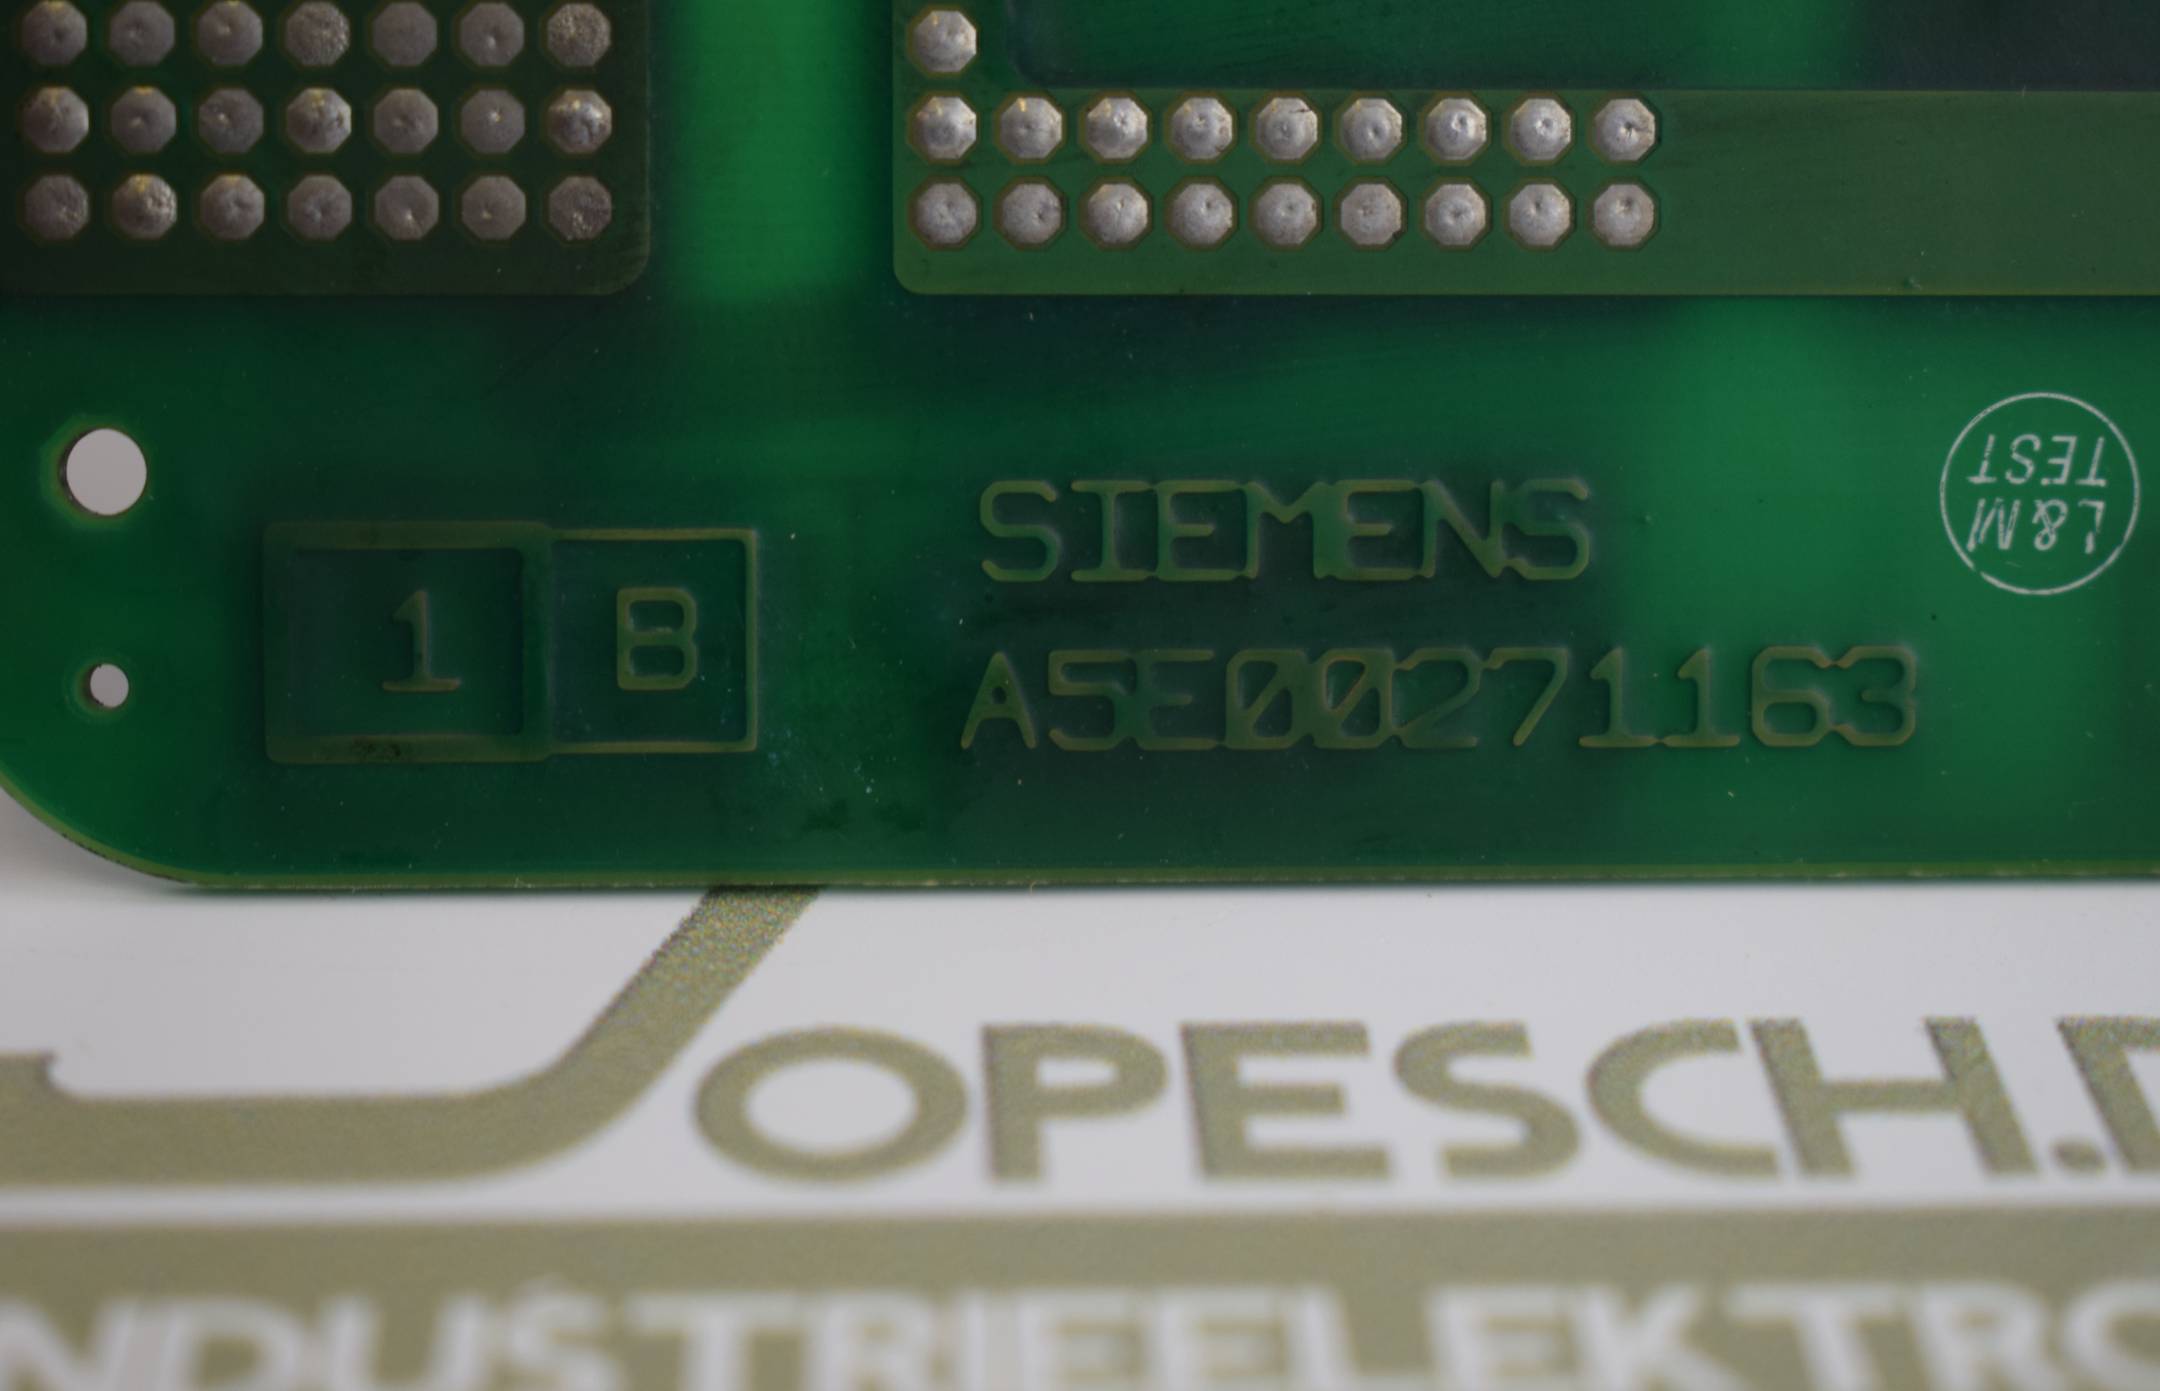 Siemens A5E00271163 E1 Ver. B ( A5E00271187 ) Ver. A 